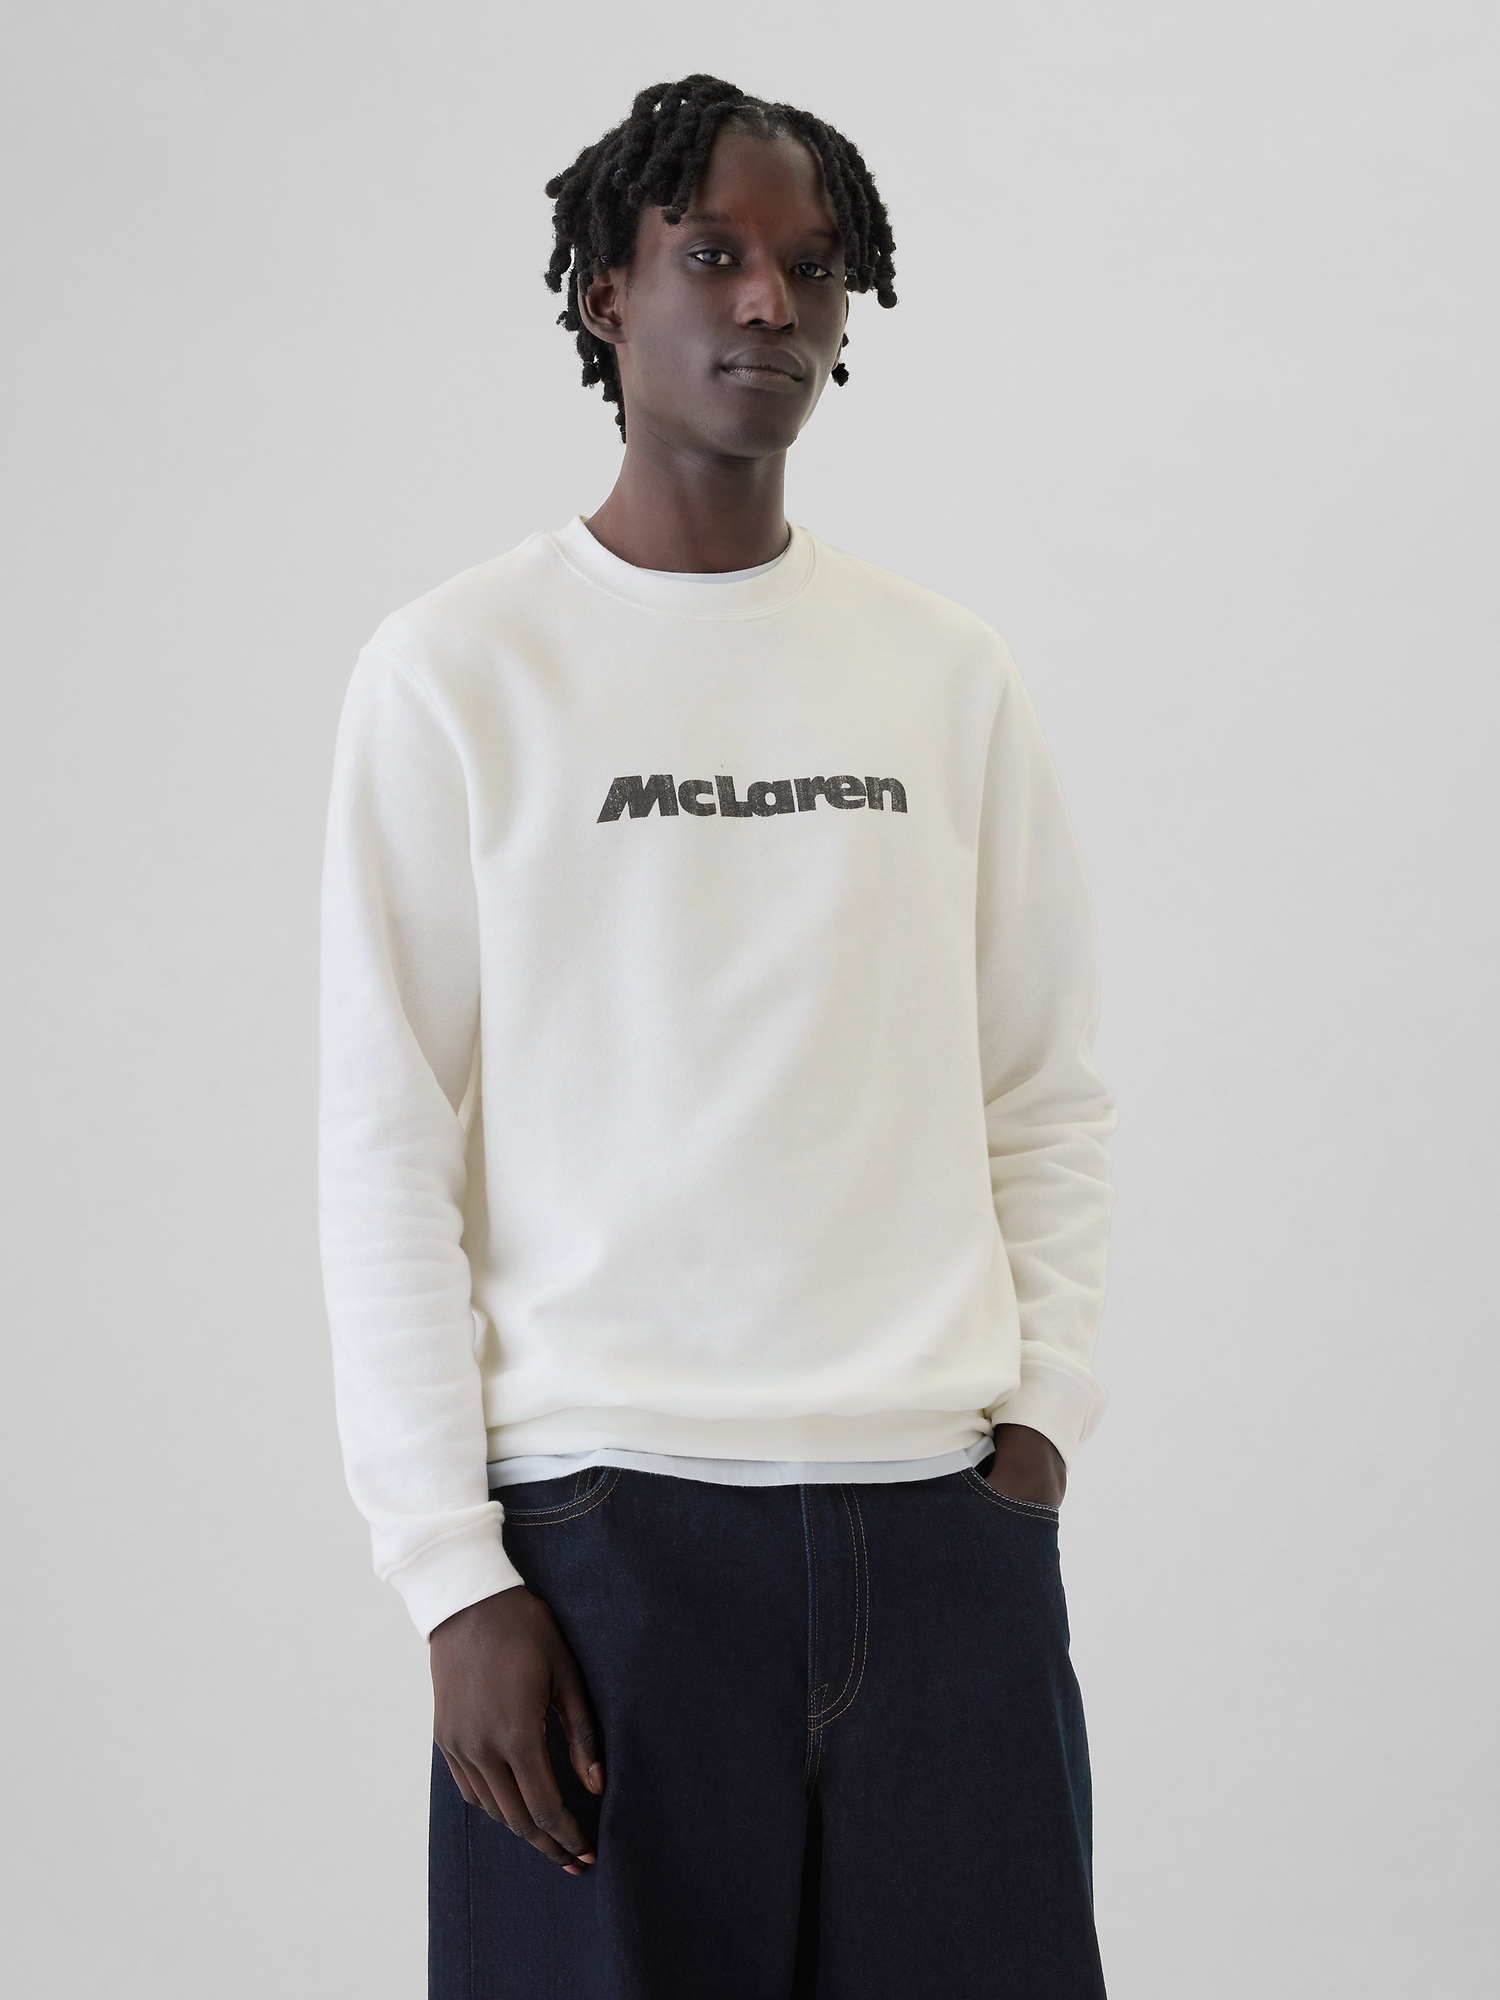 McLaren Graphic Sweatshirt